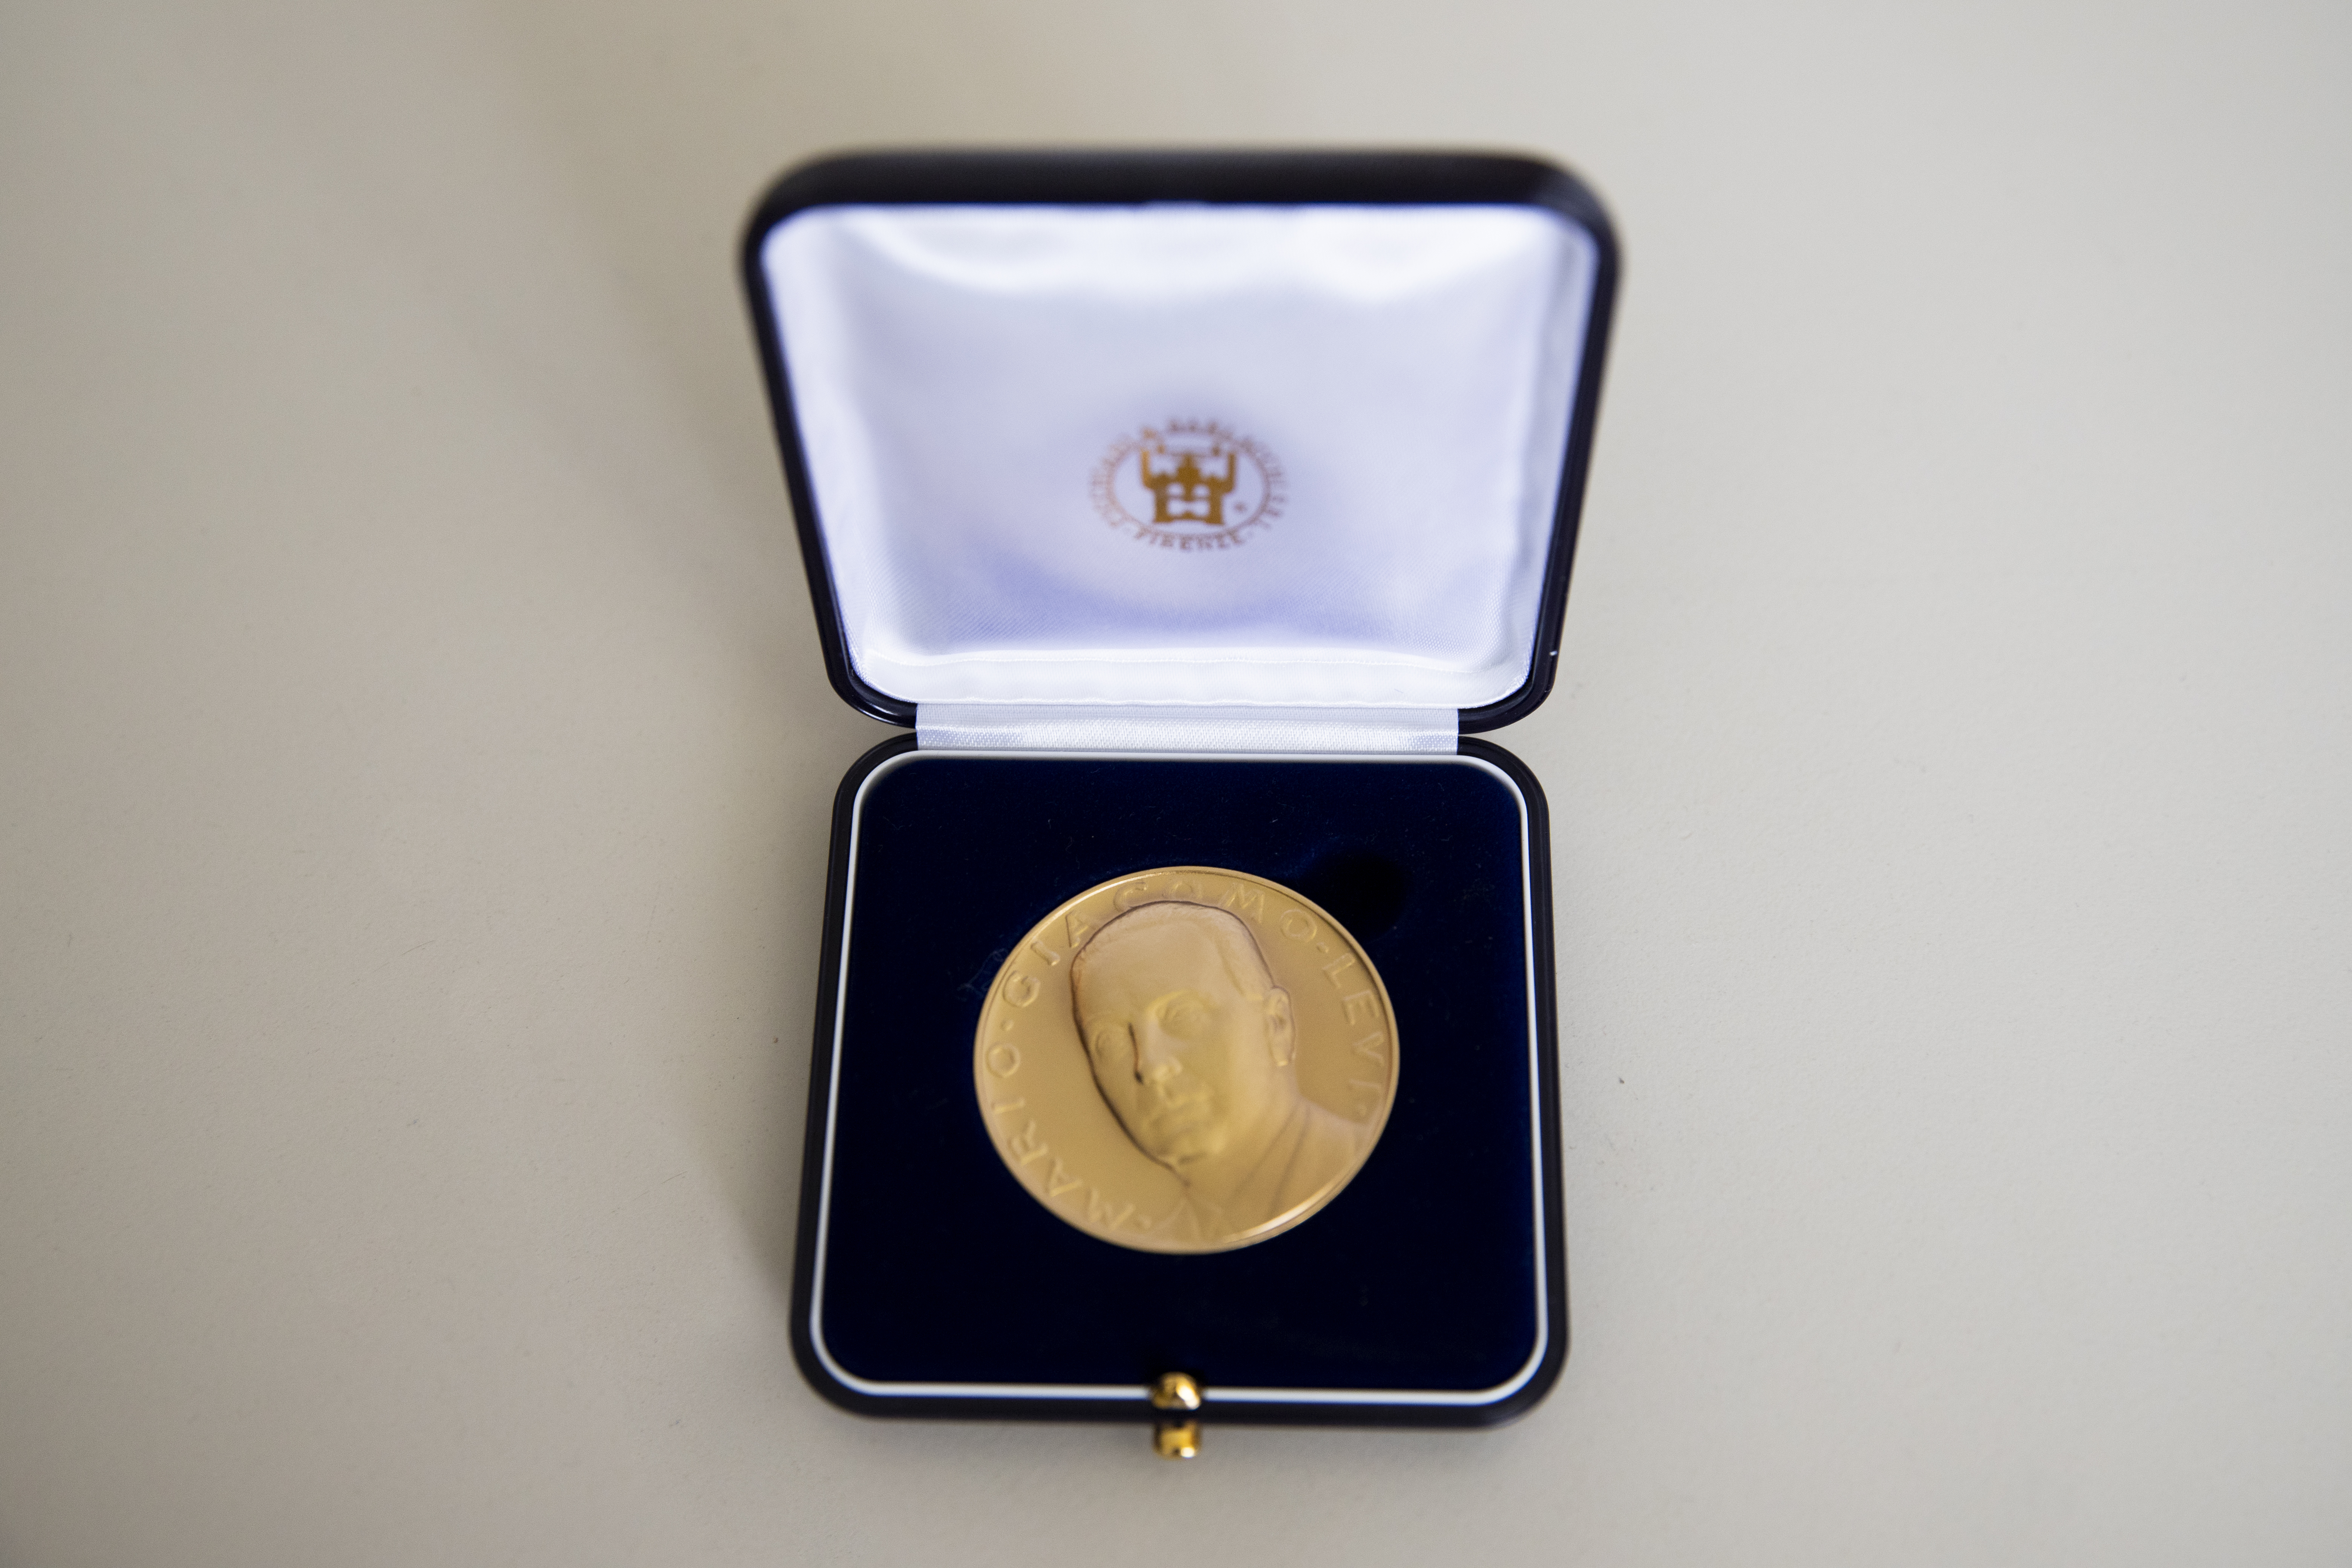 Die „Medaglia LEVI“ (LEVI-Medaille) wurde zu Ehren des italienischen Chemikers Mario Giacomo Levi ins Leben gerufen